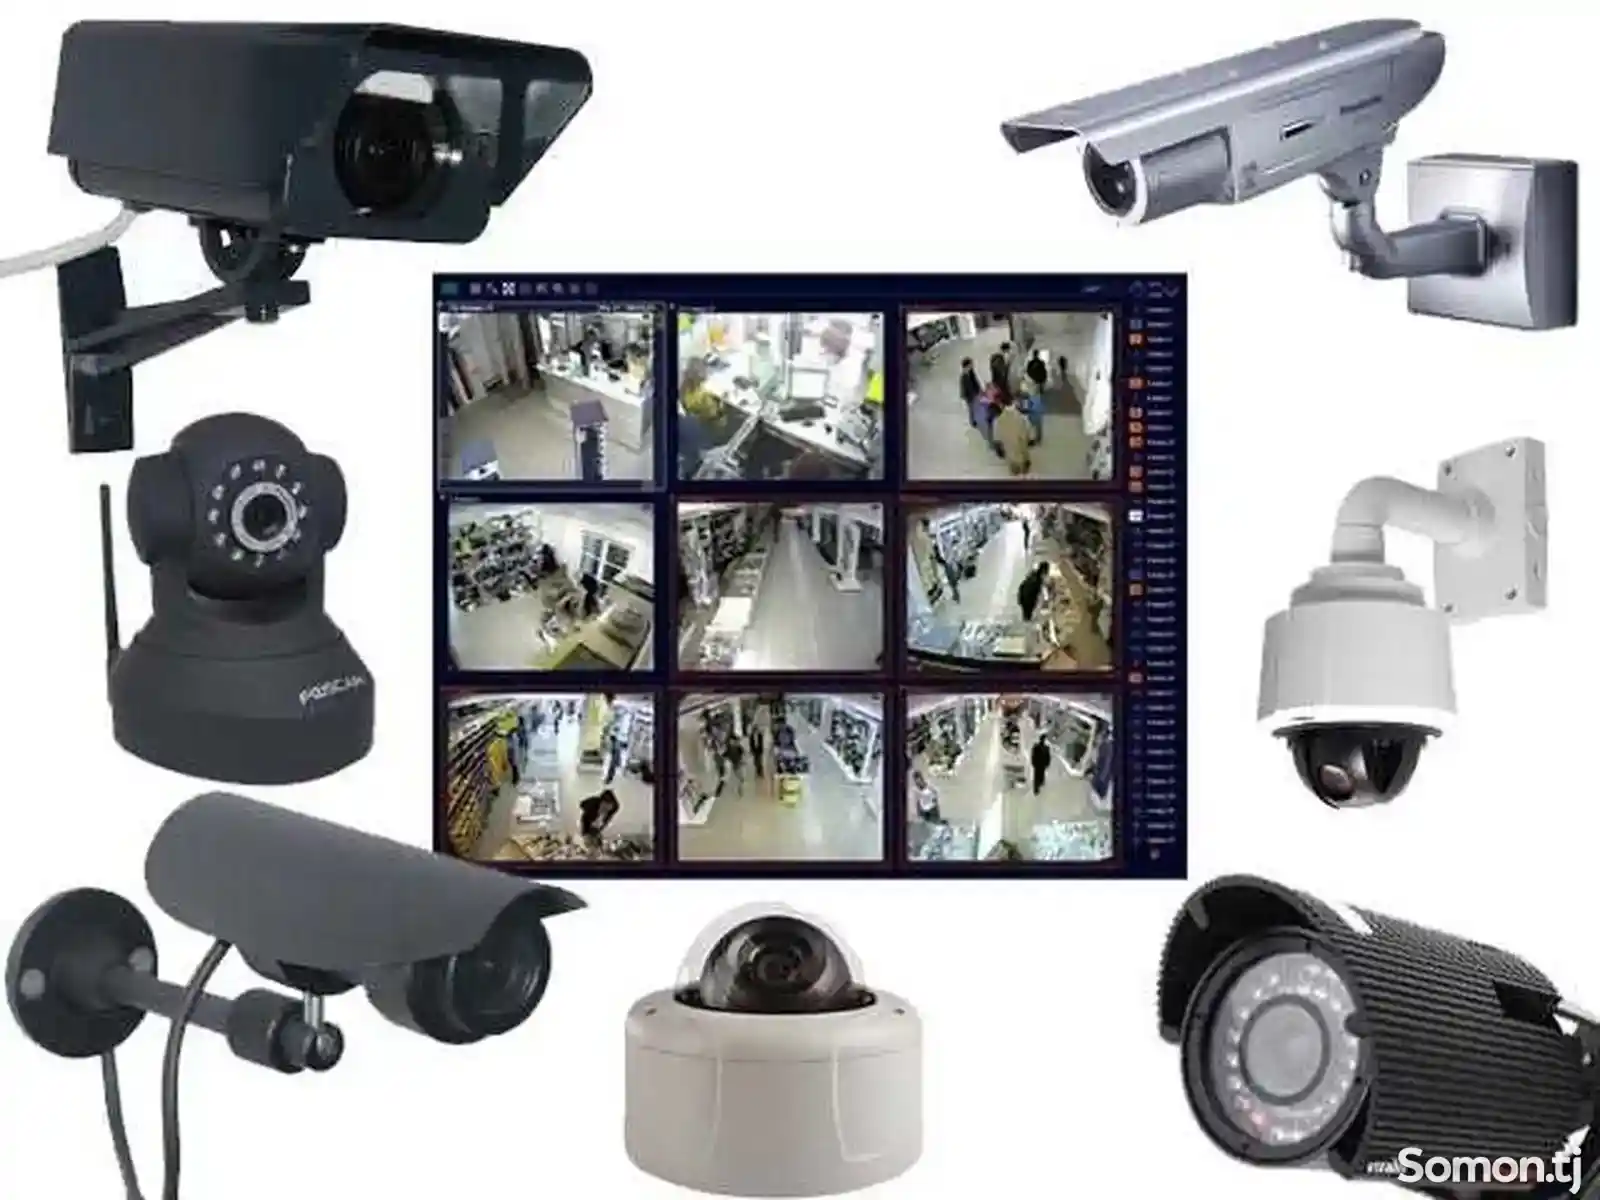 Услуги по установке и настройке систем видеонаблюдения